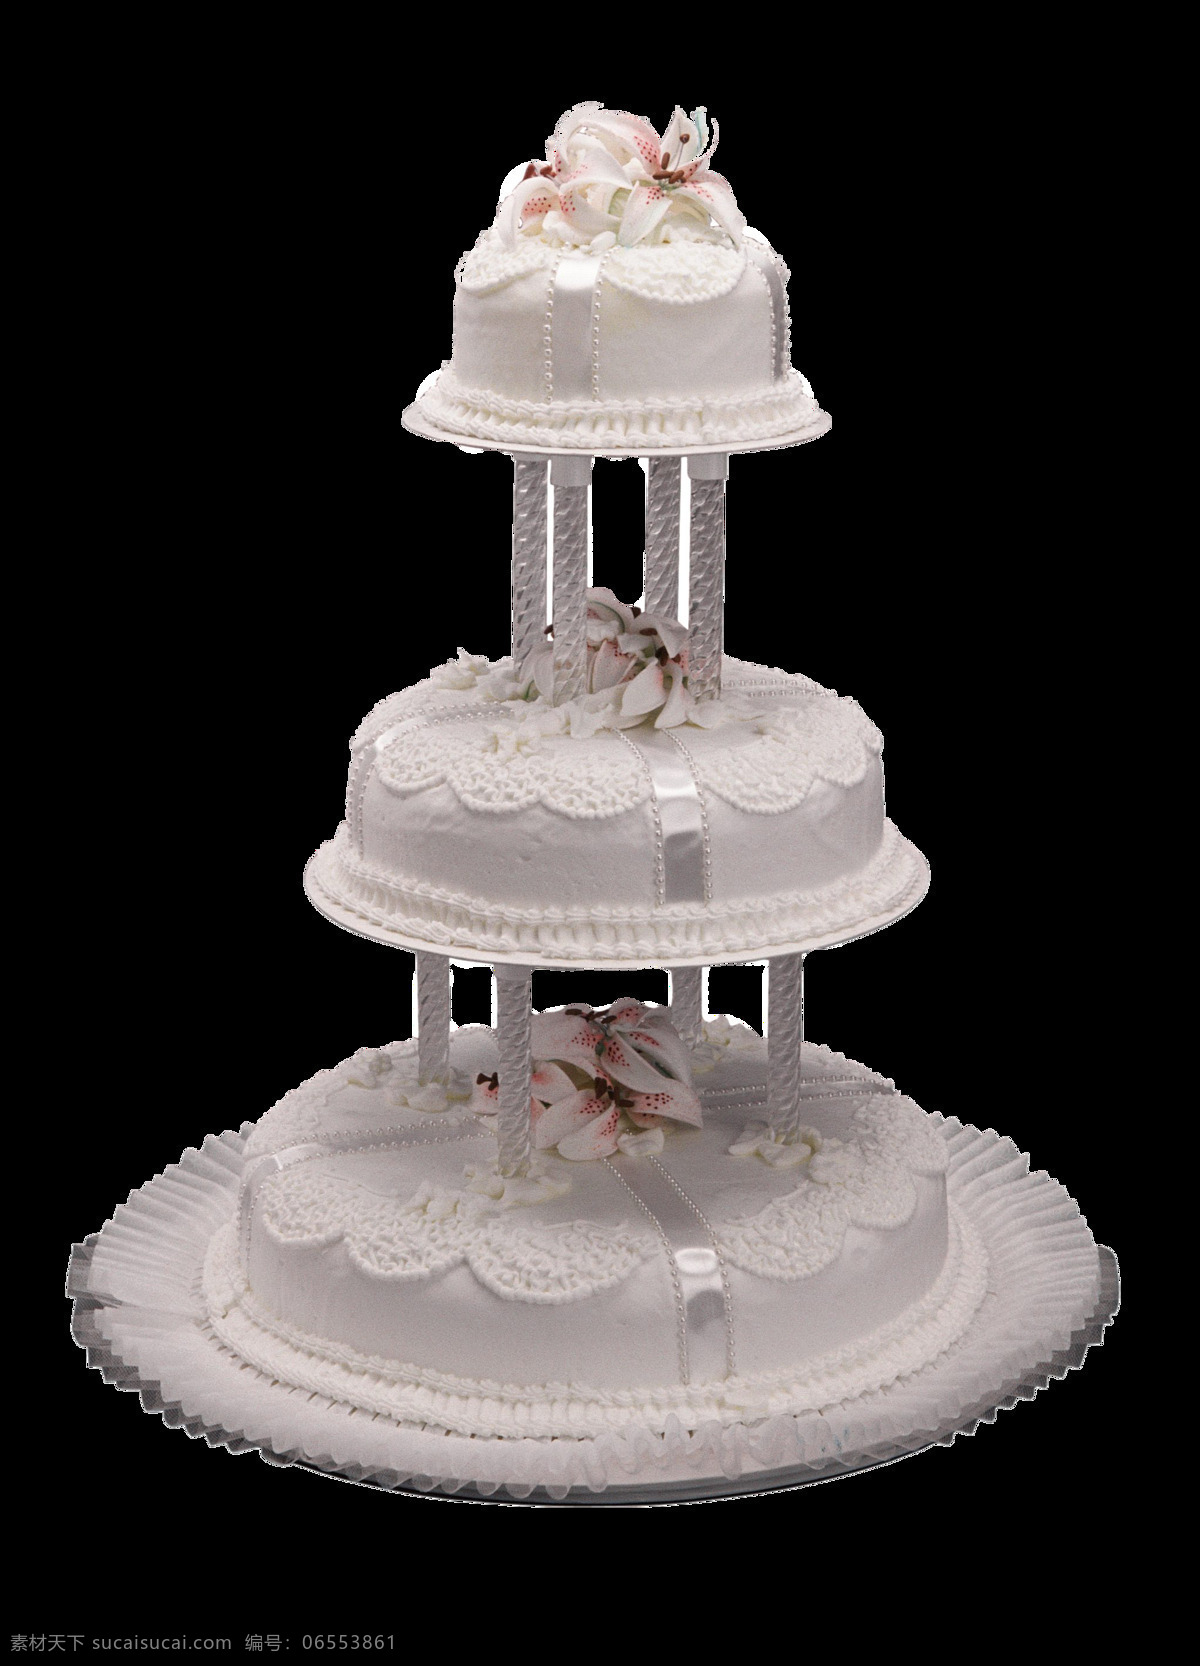 三 层 婚礼 蛋糕 免 抠 透明 图 婚礼蛋糕台 婚礼蛋糕刀 玫瑰婚礼蛋糕 婚礼蛋糕架 高层婚礼蛋糕 7层婚礼蛋糕 紫色 粉色 婚礼蛋糕架子 蛋糕图片 婚礼素材